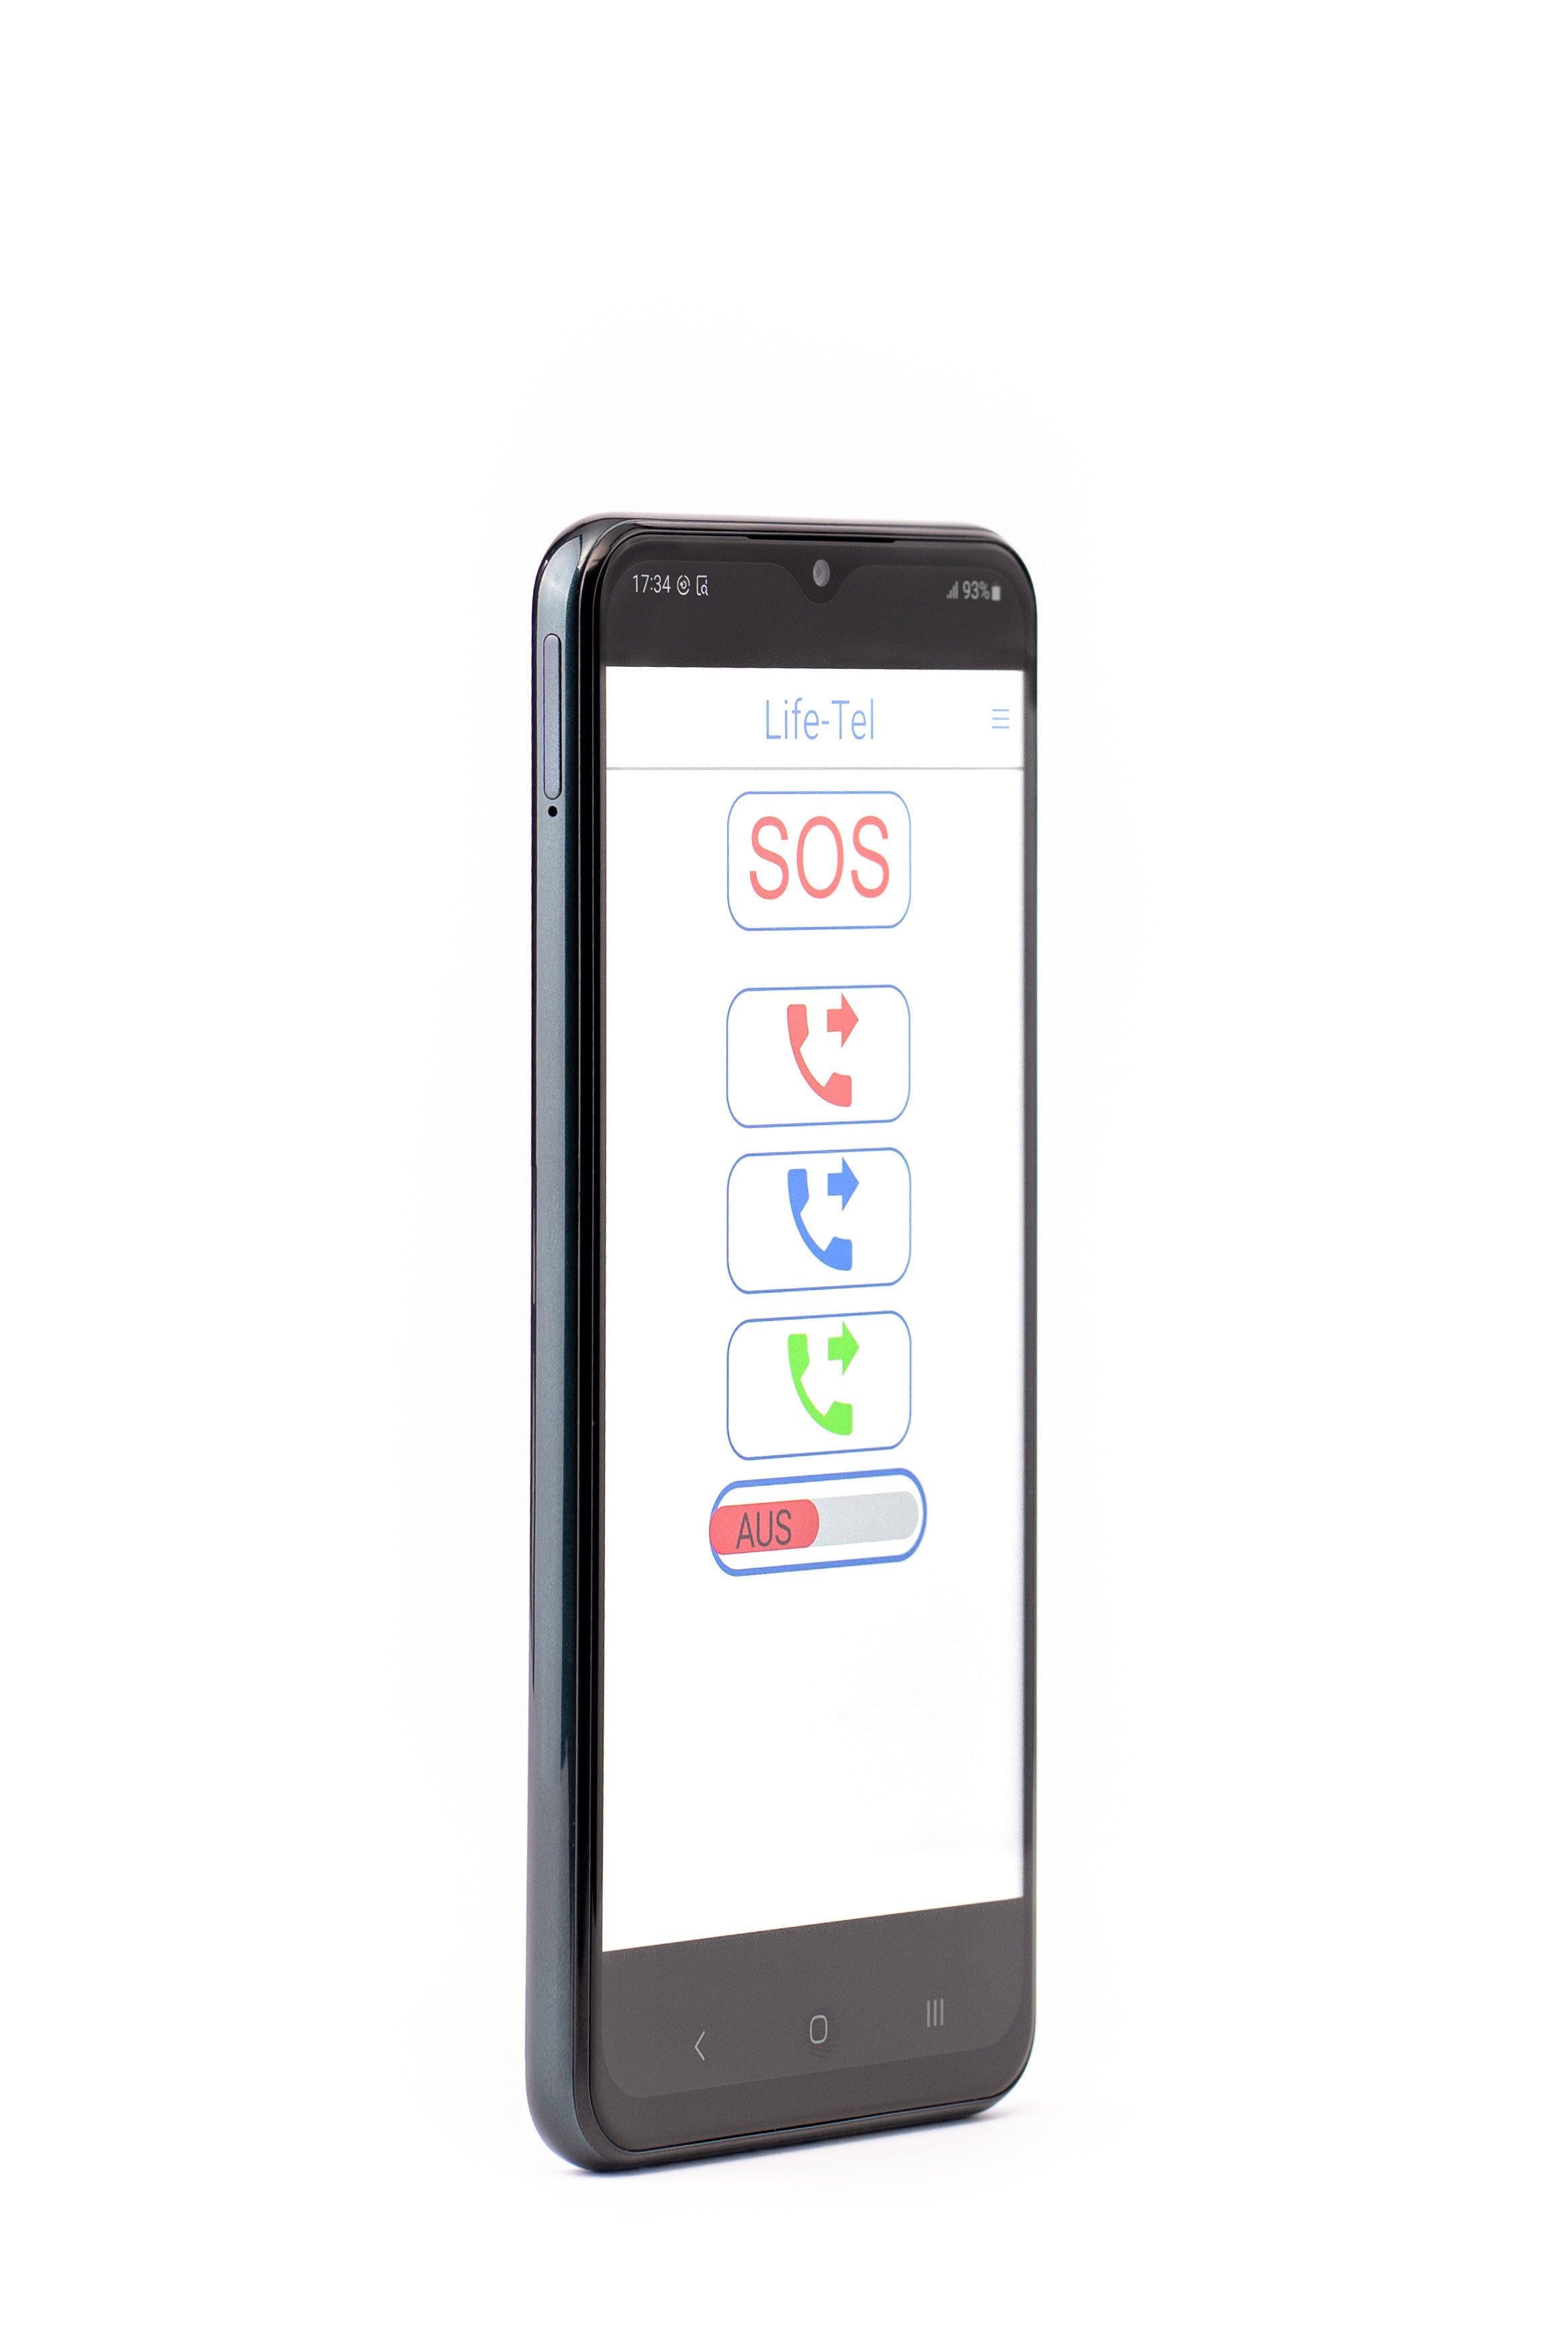 Smartfon Life Tel 7 L - 5G jako osobisty system sygnalizacji alarmowej dla pojedynczego stanowiska pracy wraz z aplikacją do połączeń alarmowych